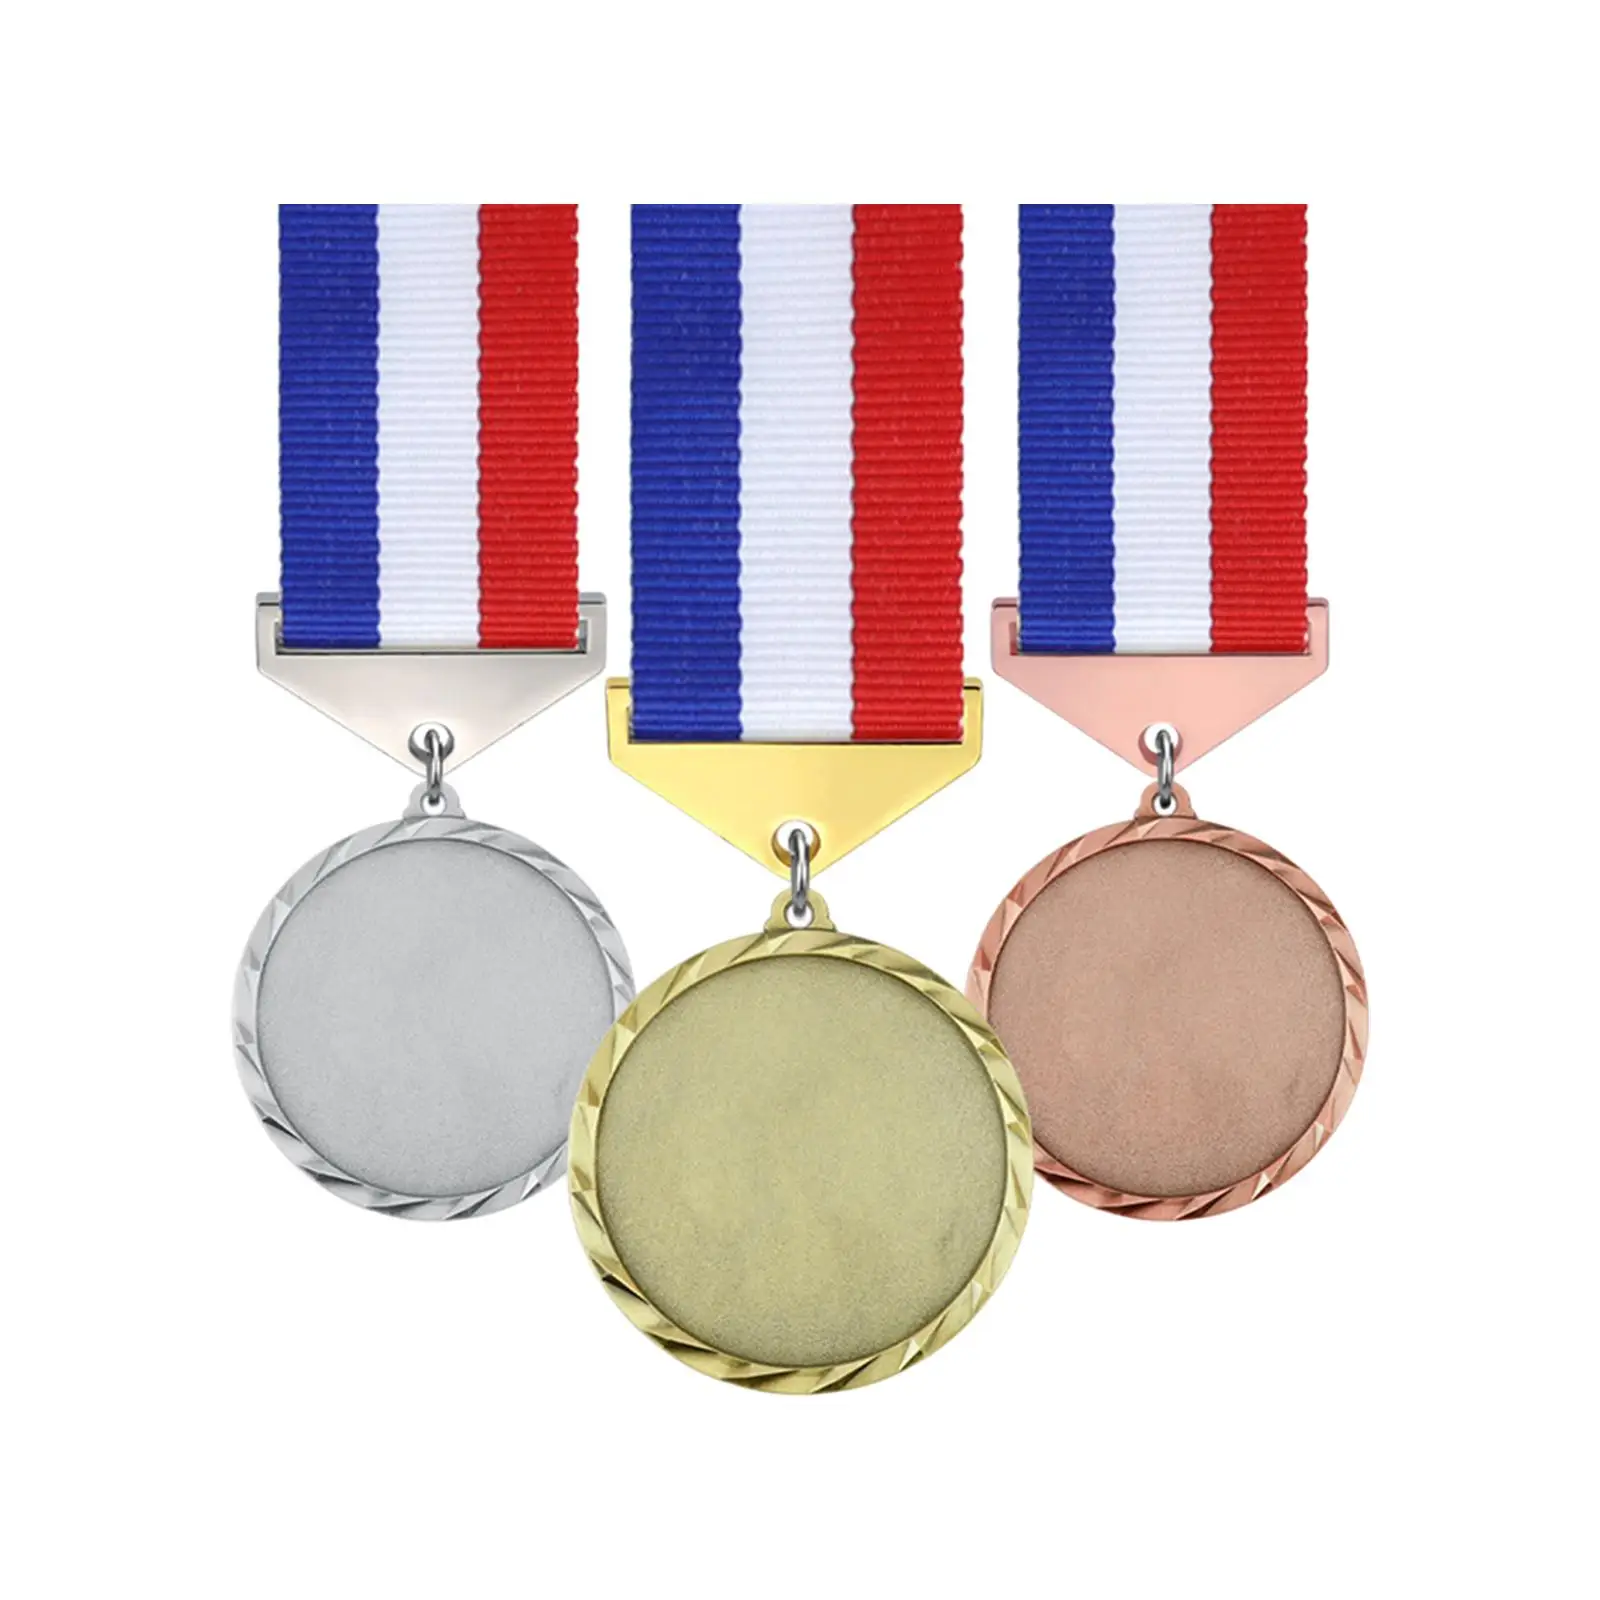 3 sztuki medale metalowe złote srebrne brązowe medale ze stopu cynku medale zdobywcy medali na szkolne imprezy sportowe zawody koszykówki